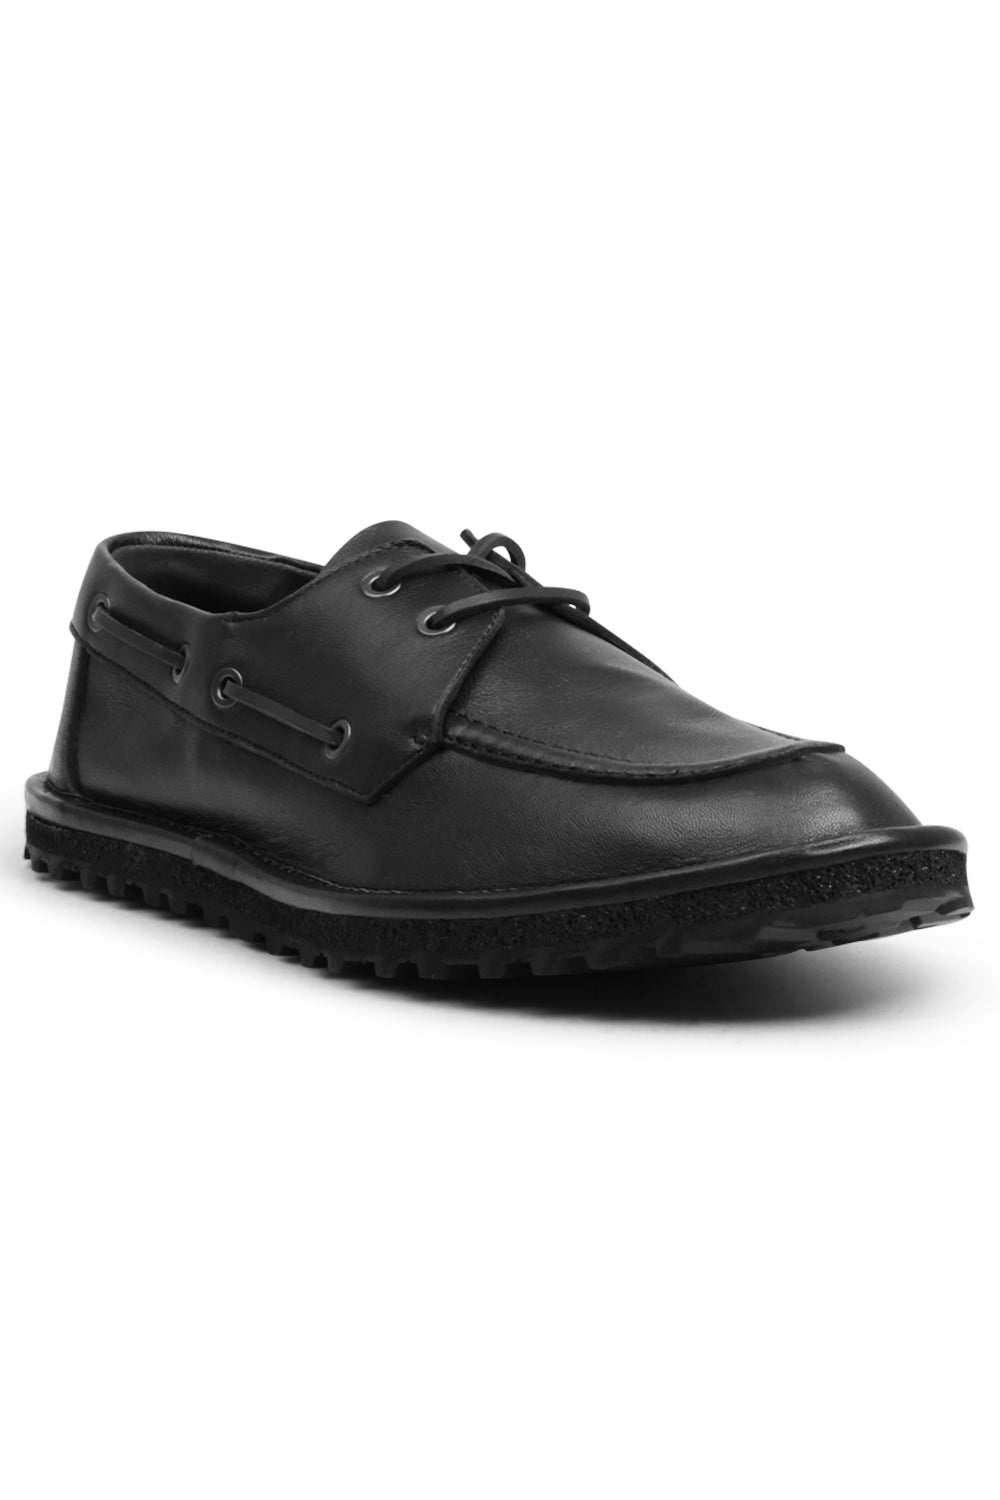 DRIES VAN NOTEN SHOES Leather Lace Up Shoes | Black